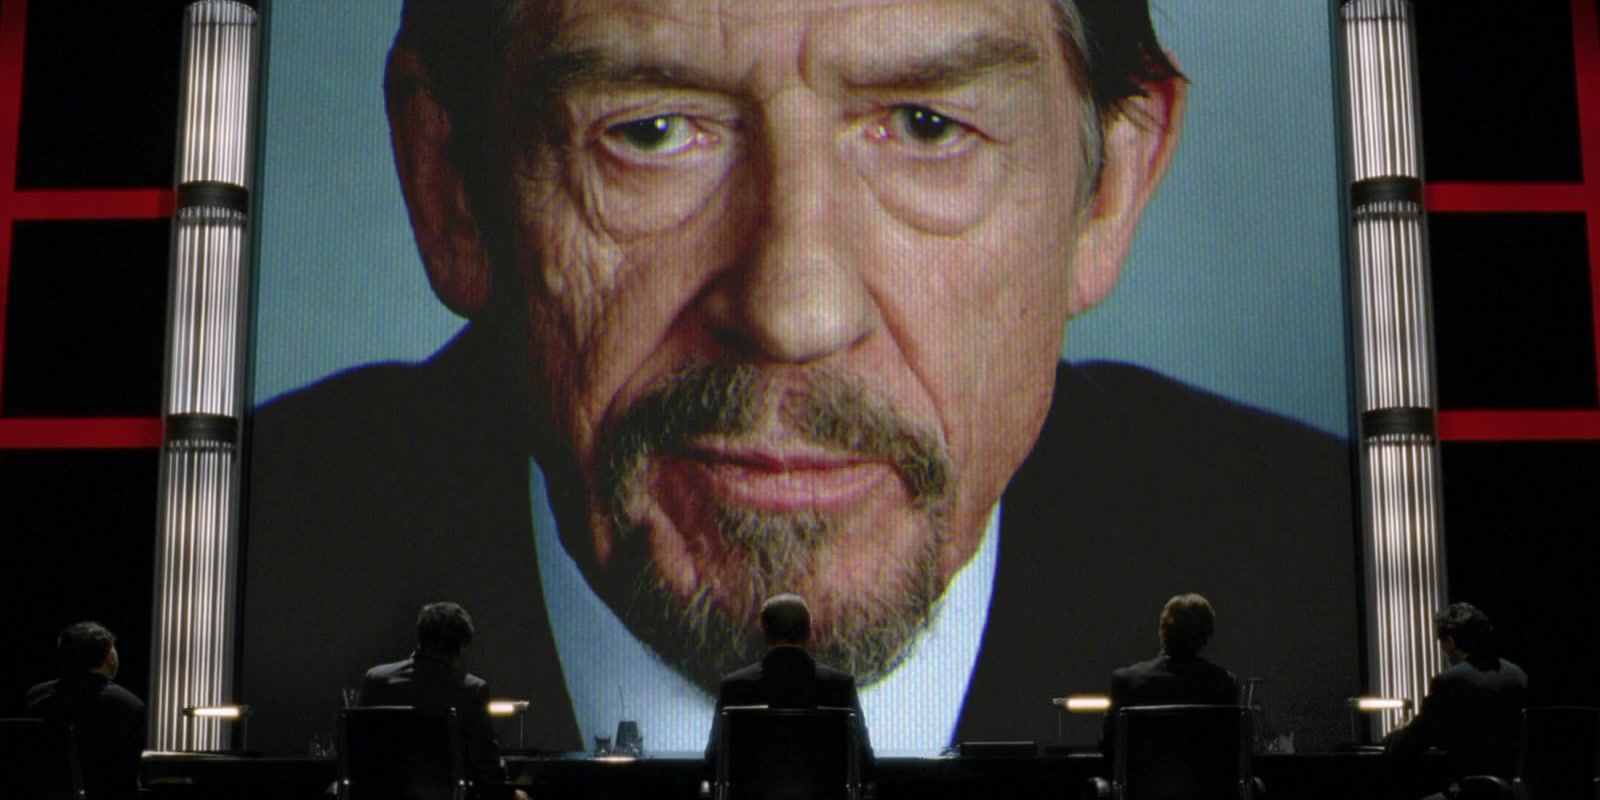 Adam Suttler (John Hurt) speaking from a large video screen in V for Vendetta.